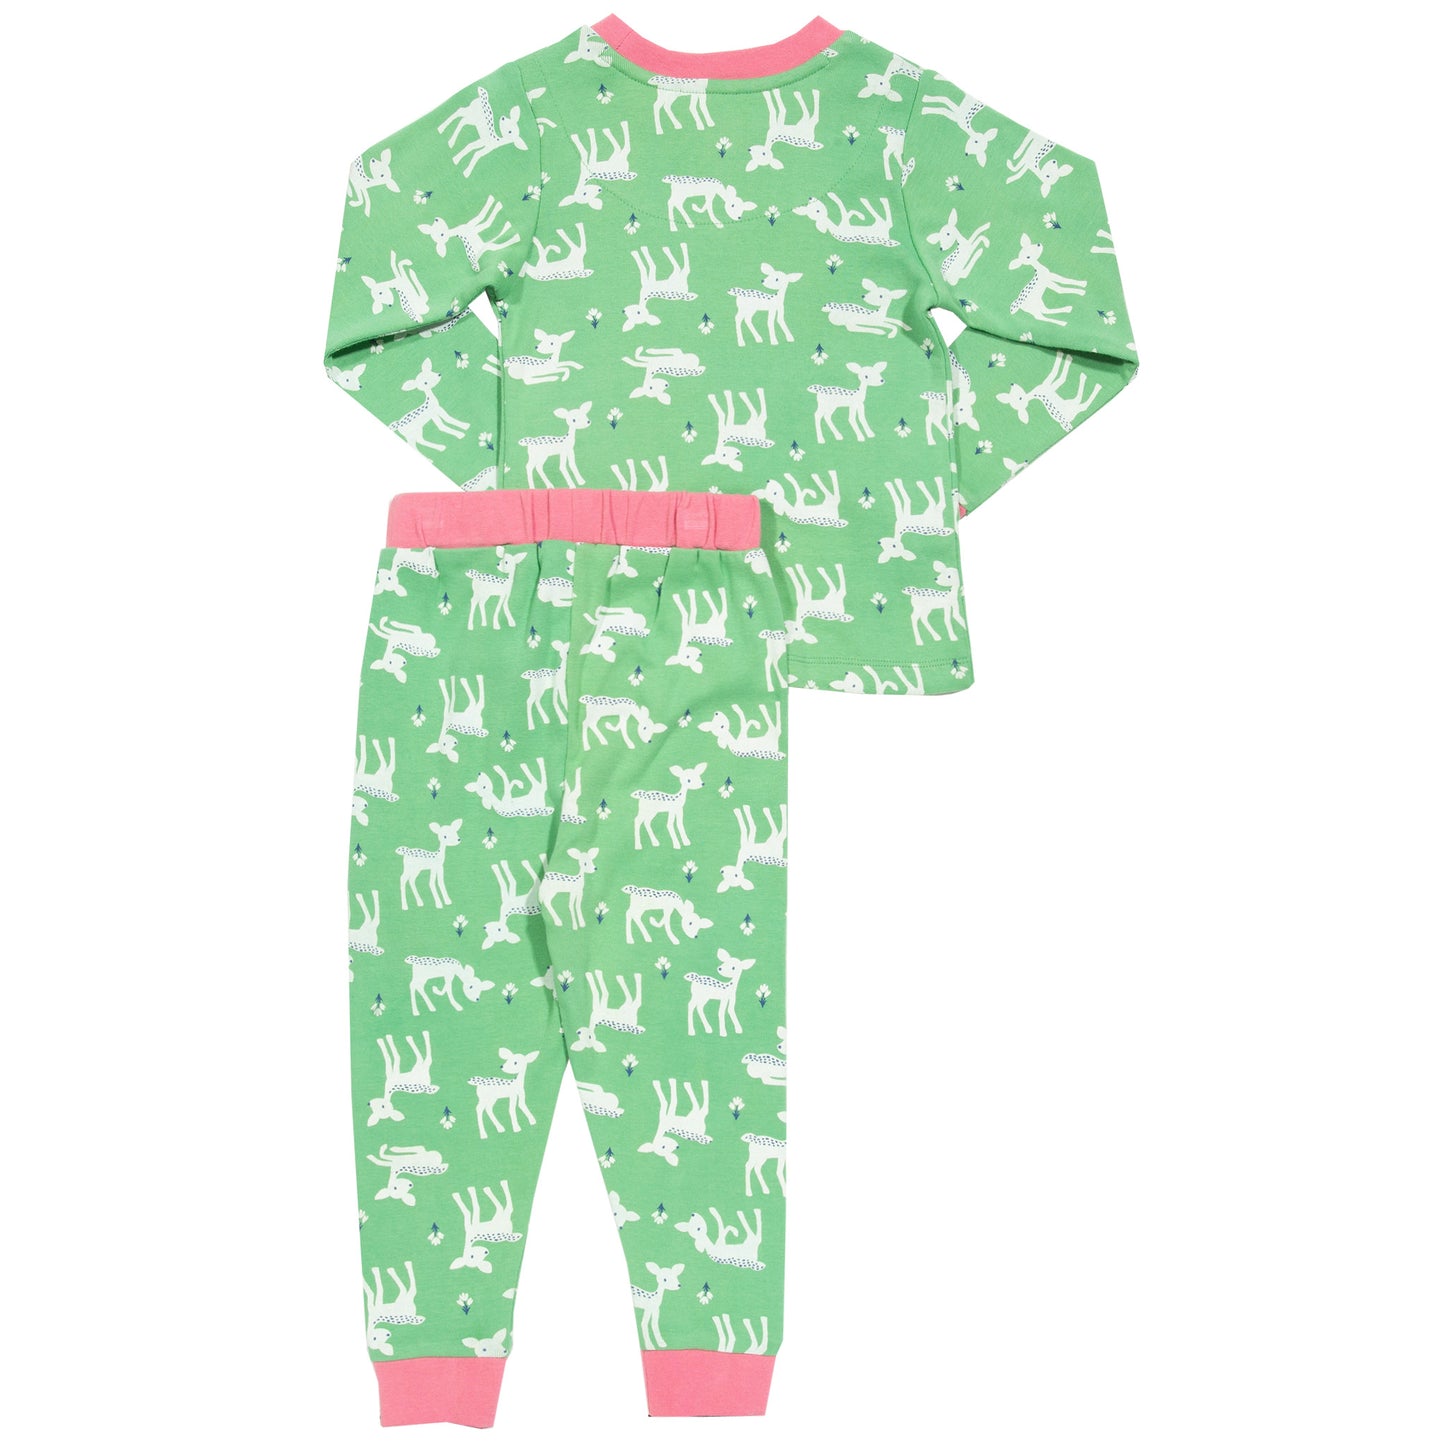 Little deer pyjamas